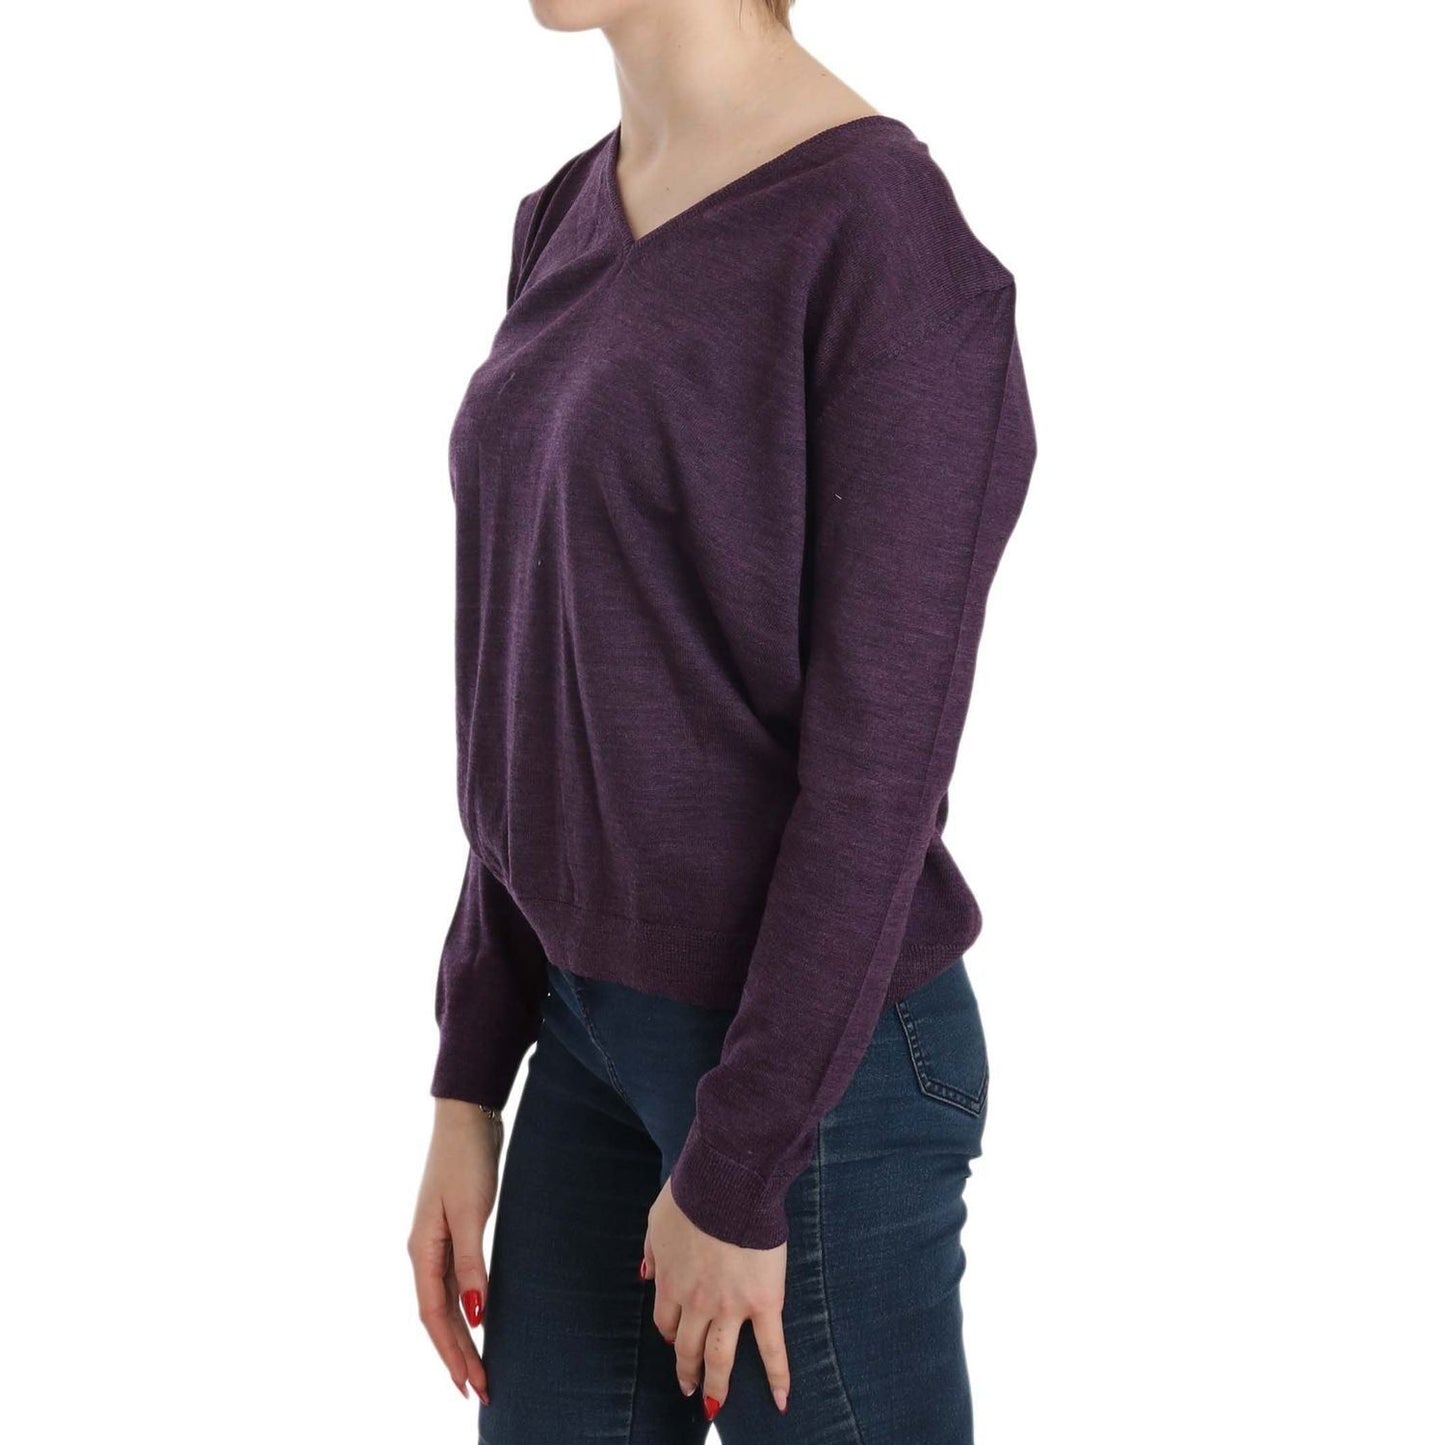 BYBLOS Elegant Purple V-Neck Wool Blouse purple-v-neck-long-sleeve-pullover-top